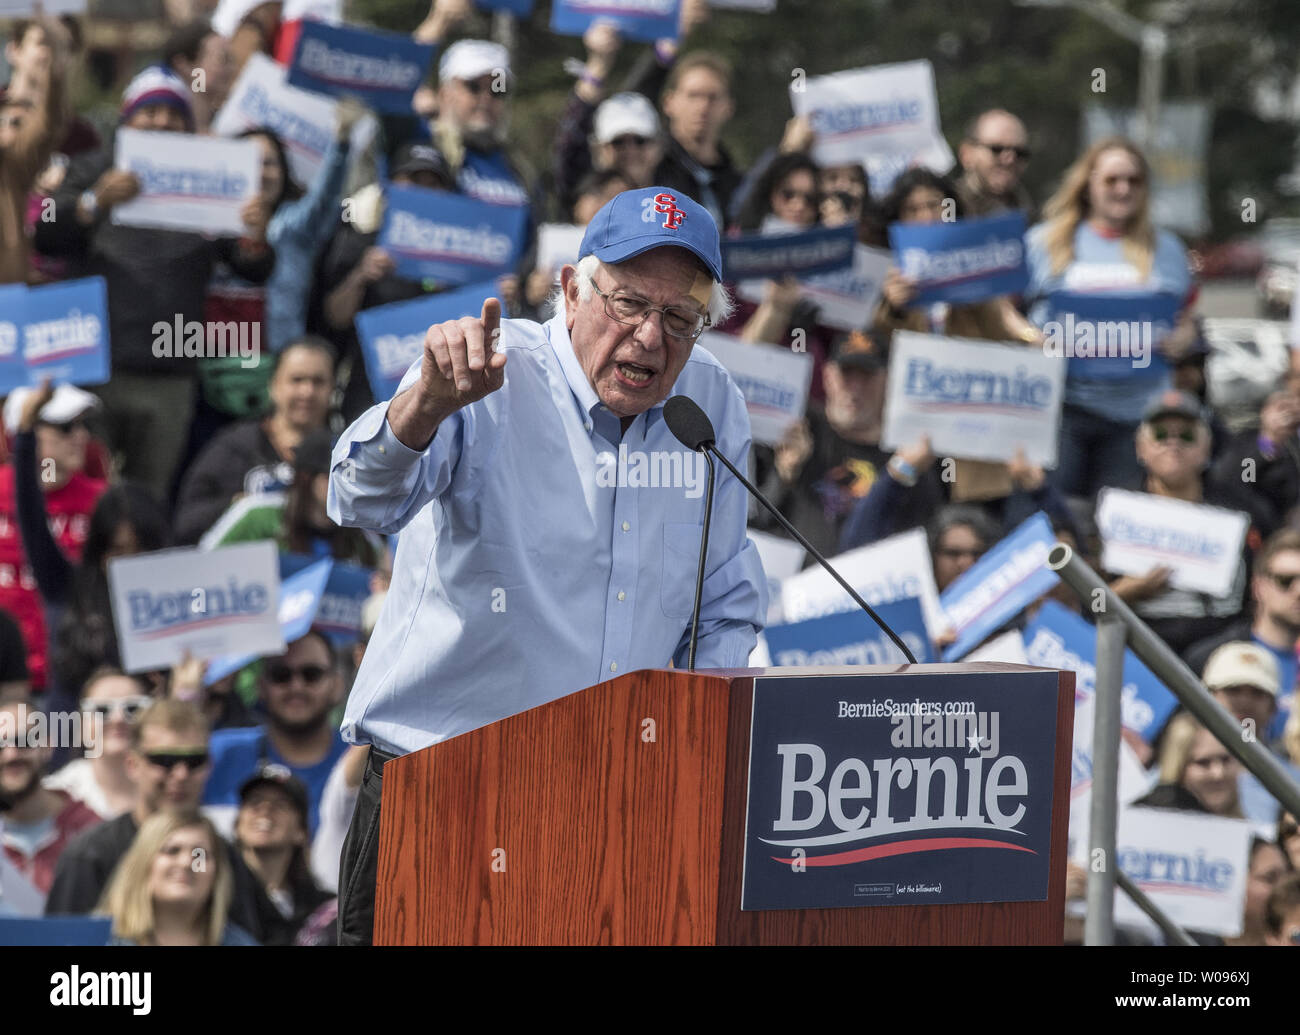 Il Sen. Bernie Sanders risolve un rally a Ft. Mason a San Francisco il 24 marzo 2019. Sanders ha aderito al campo crescente di candidati per opporsi Presidente Trump nel 2020 elezione. Foto di Terry Schmitt/UPI Foto Stock